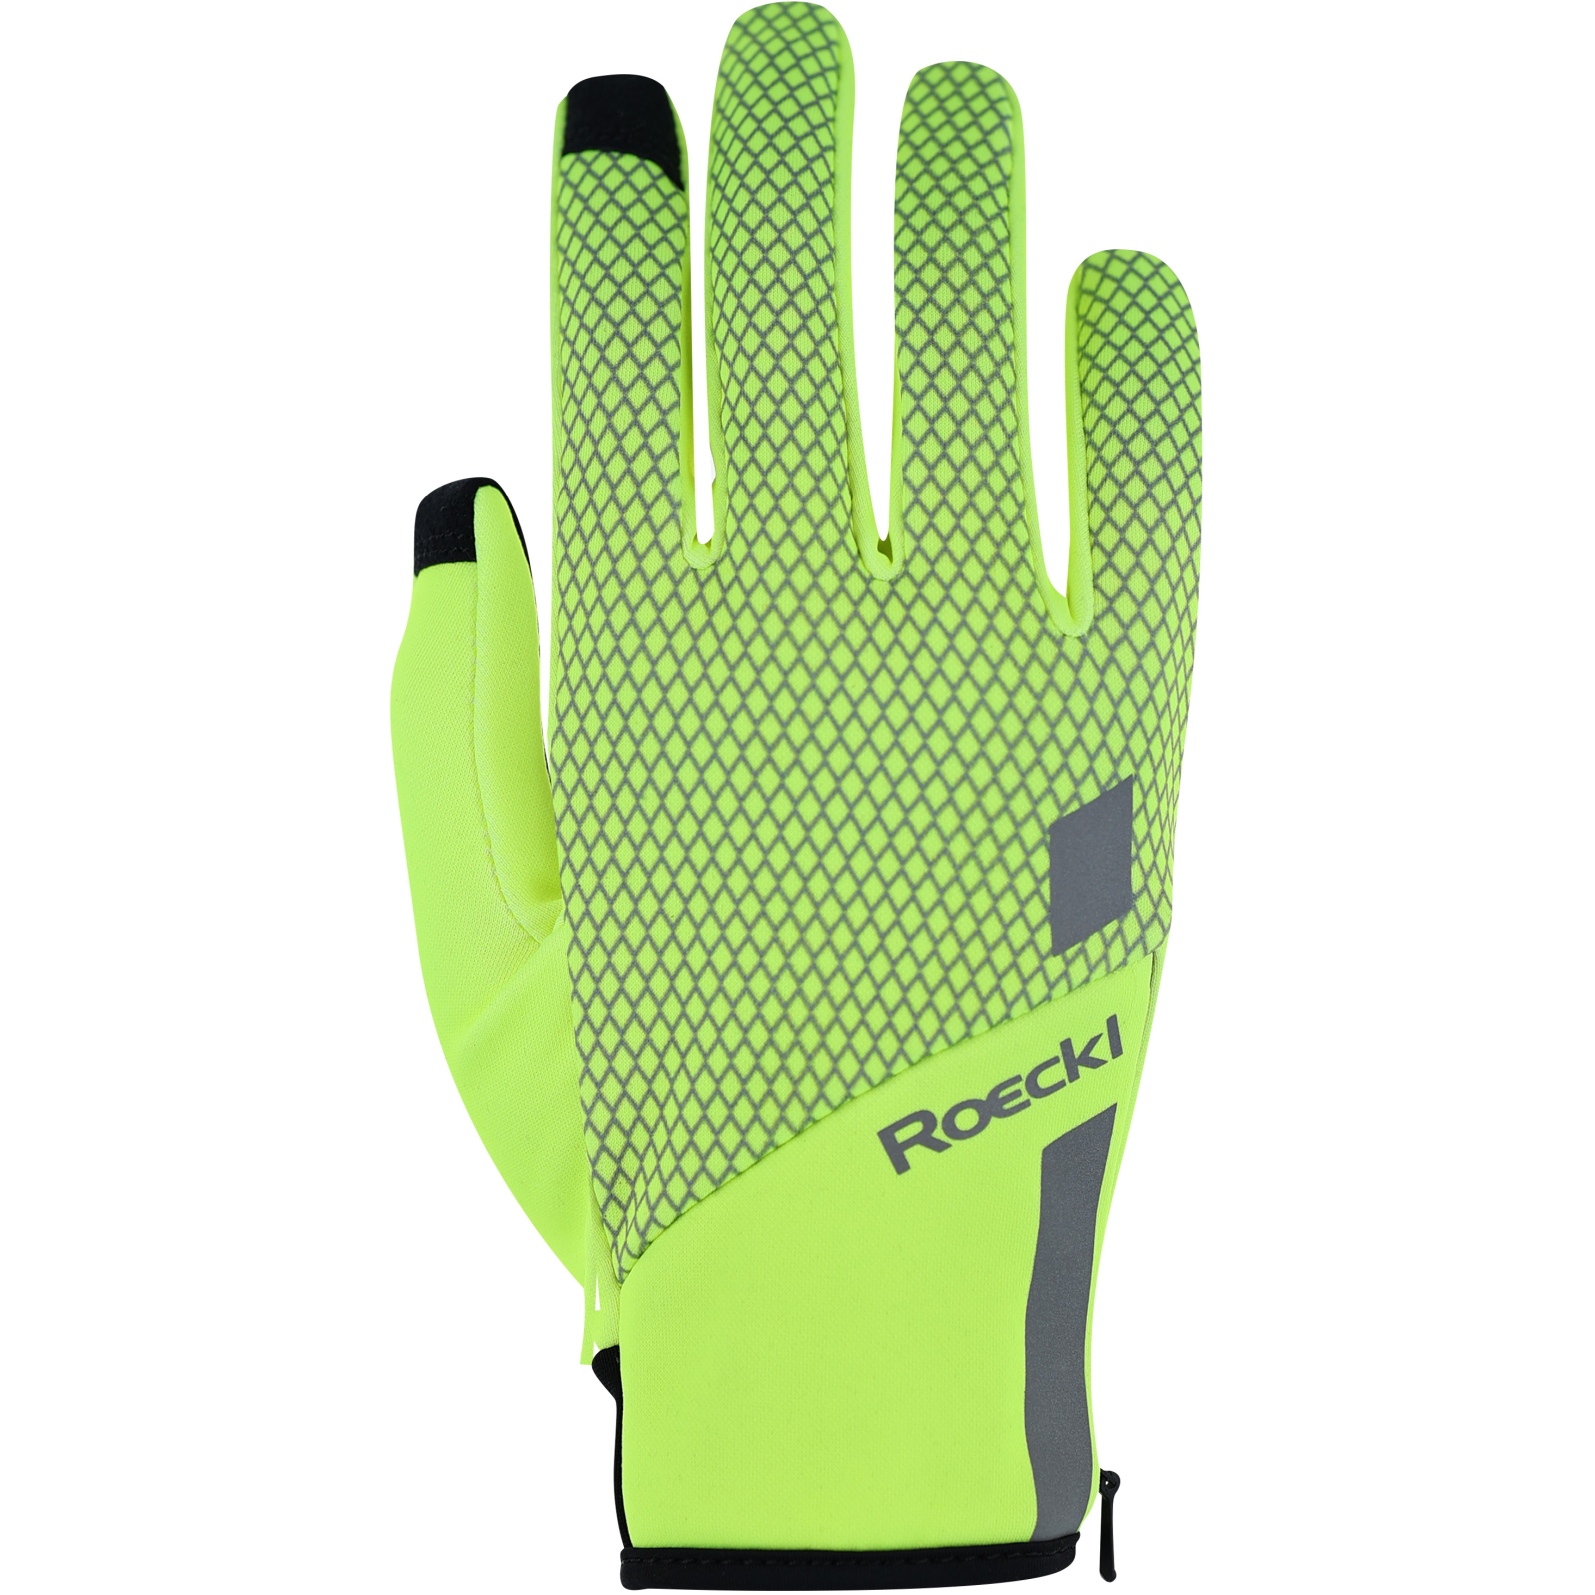 Productfoto van Roeckl Sports Jarvis Hardloop-Handschoenen - fluo yellow 2100